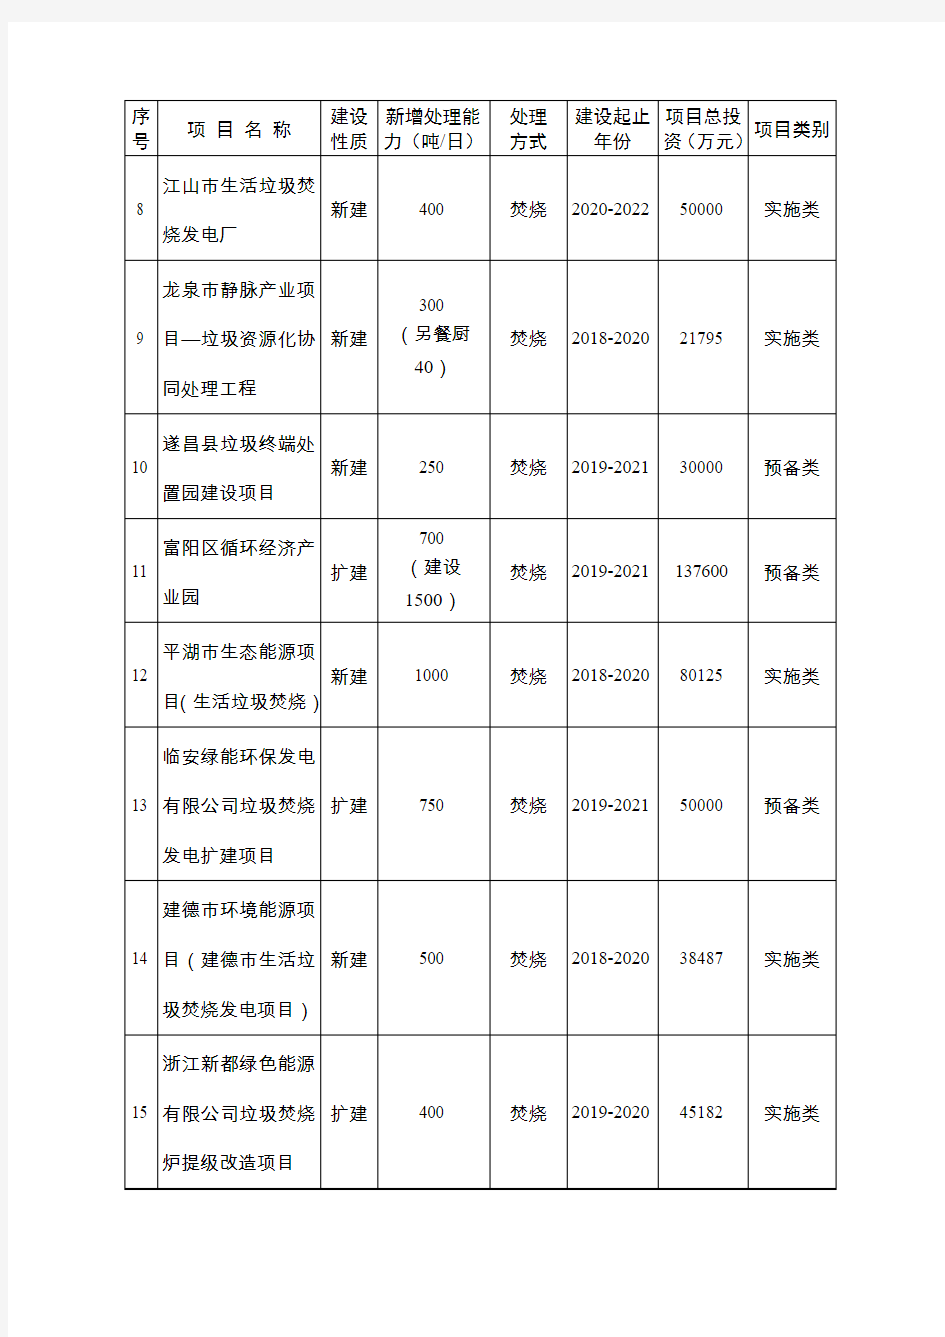 浙江省城镇生活垃圾无害化处理设施建设“十三五”规划项目调整表